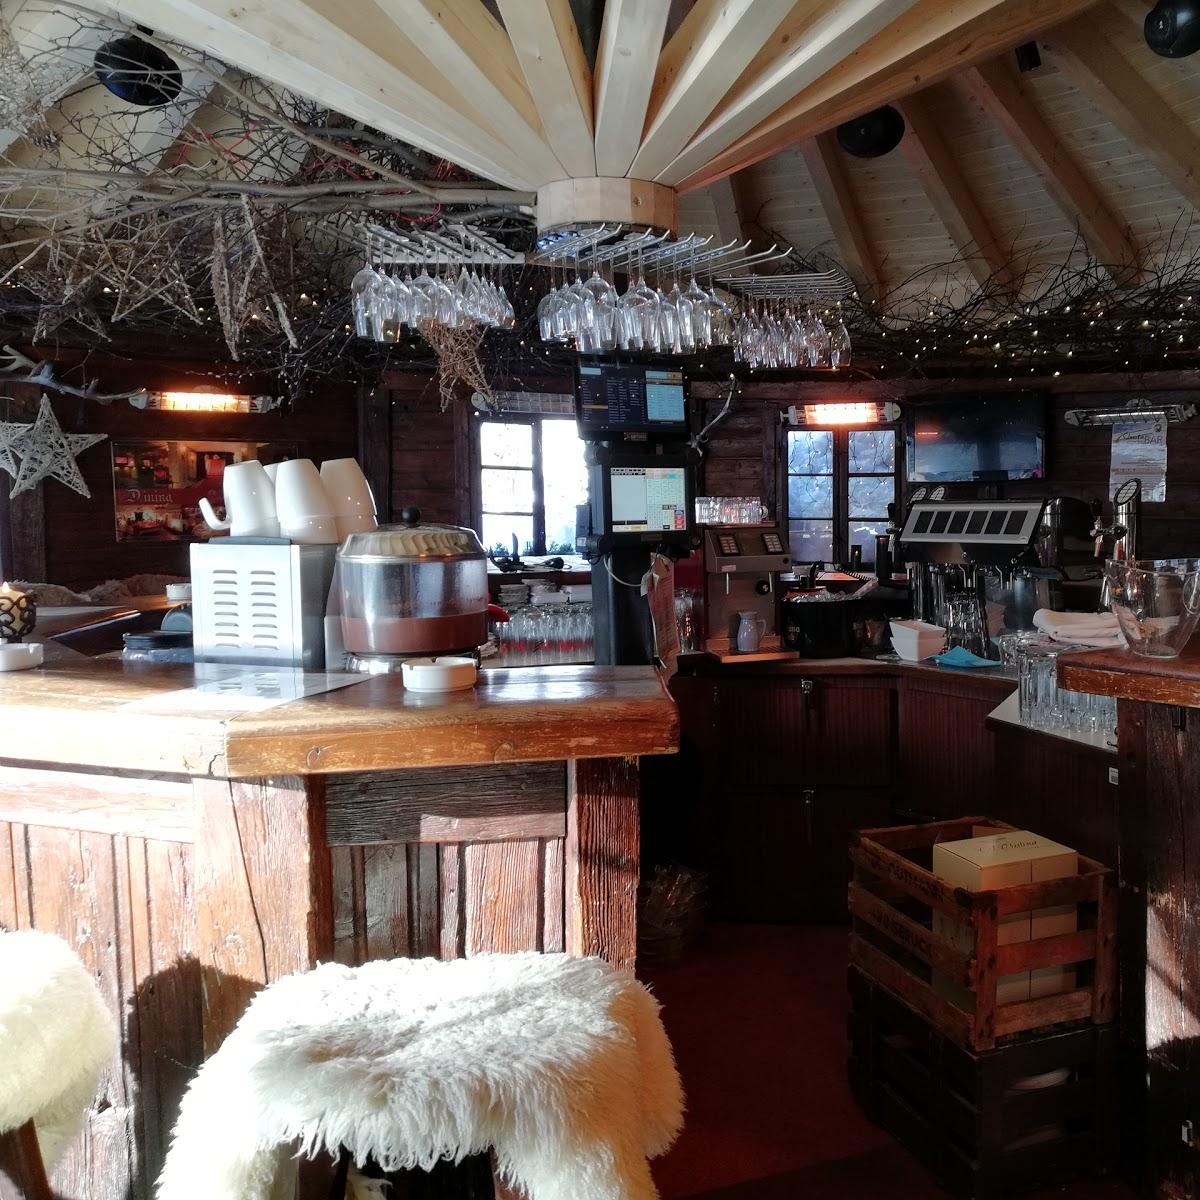 Restaurant "Parkcafe" in Seefeld in Tirol